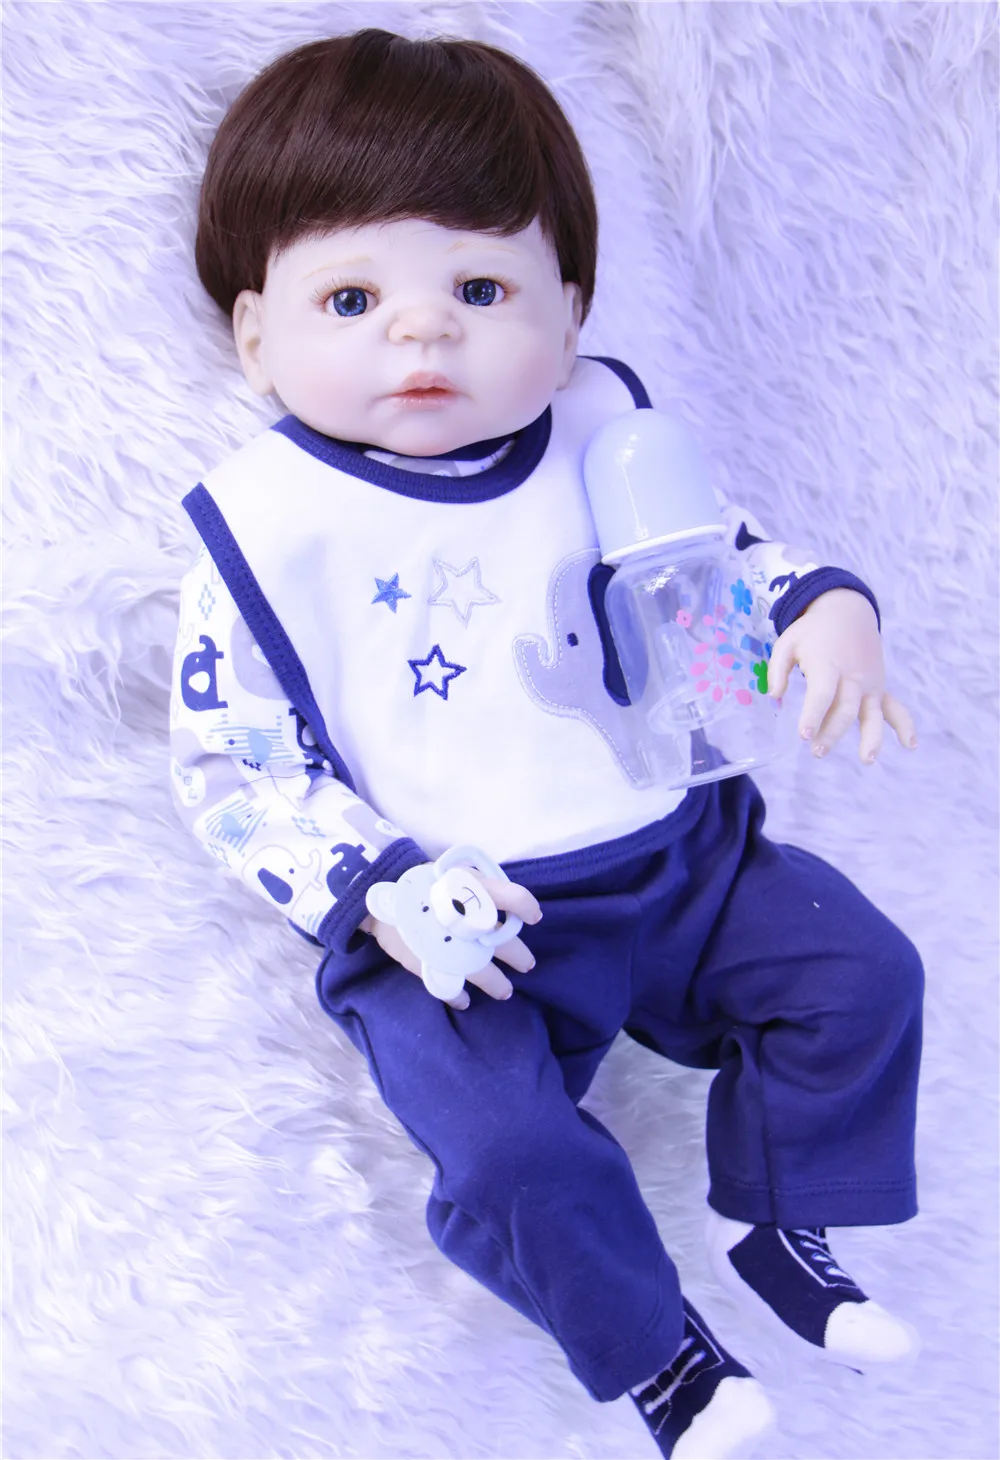 Лучшие игрушки Brinquedos силиконовые Reborn Детские куклы в синей одежде как крутой мальчик как настоящие куклы Reborn для девочек Baby alive